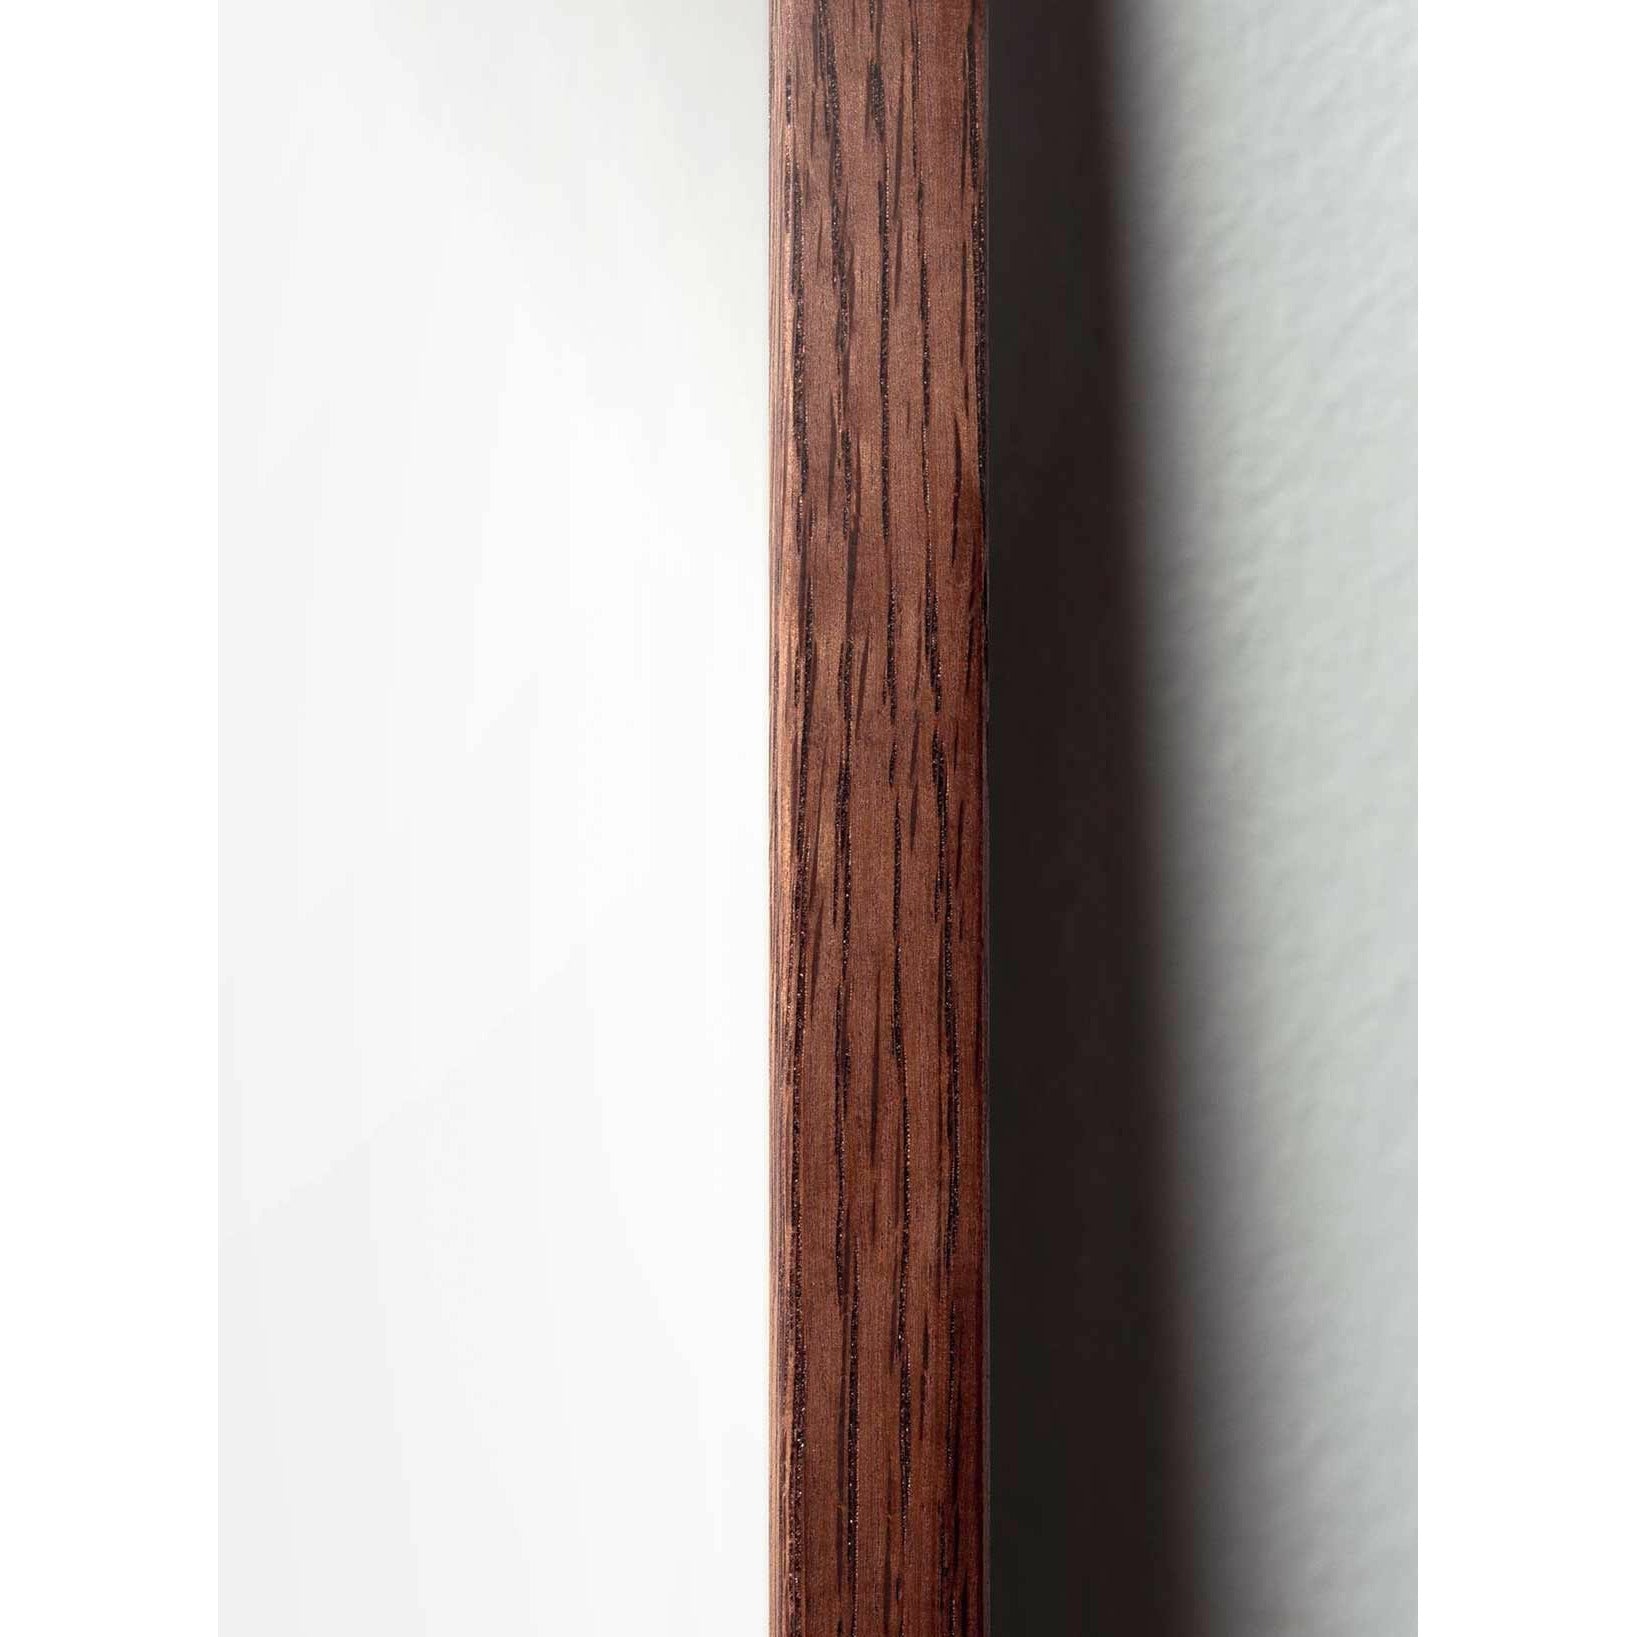 Póster clásico de huevo de creación, marco hecho de madera oscura 50x70 cm, fondo negro